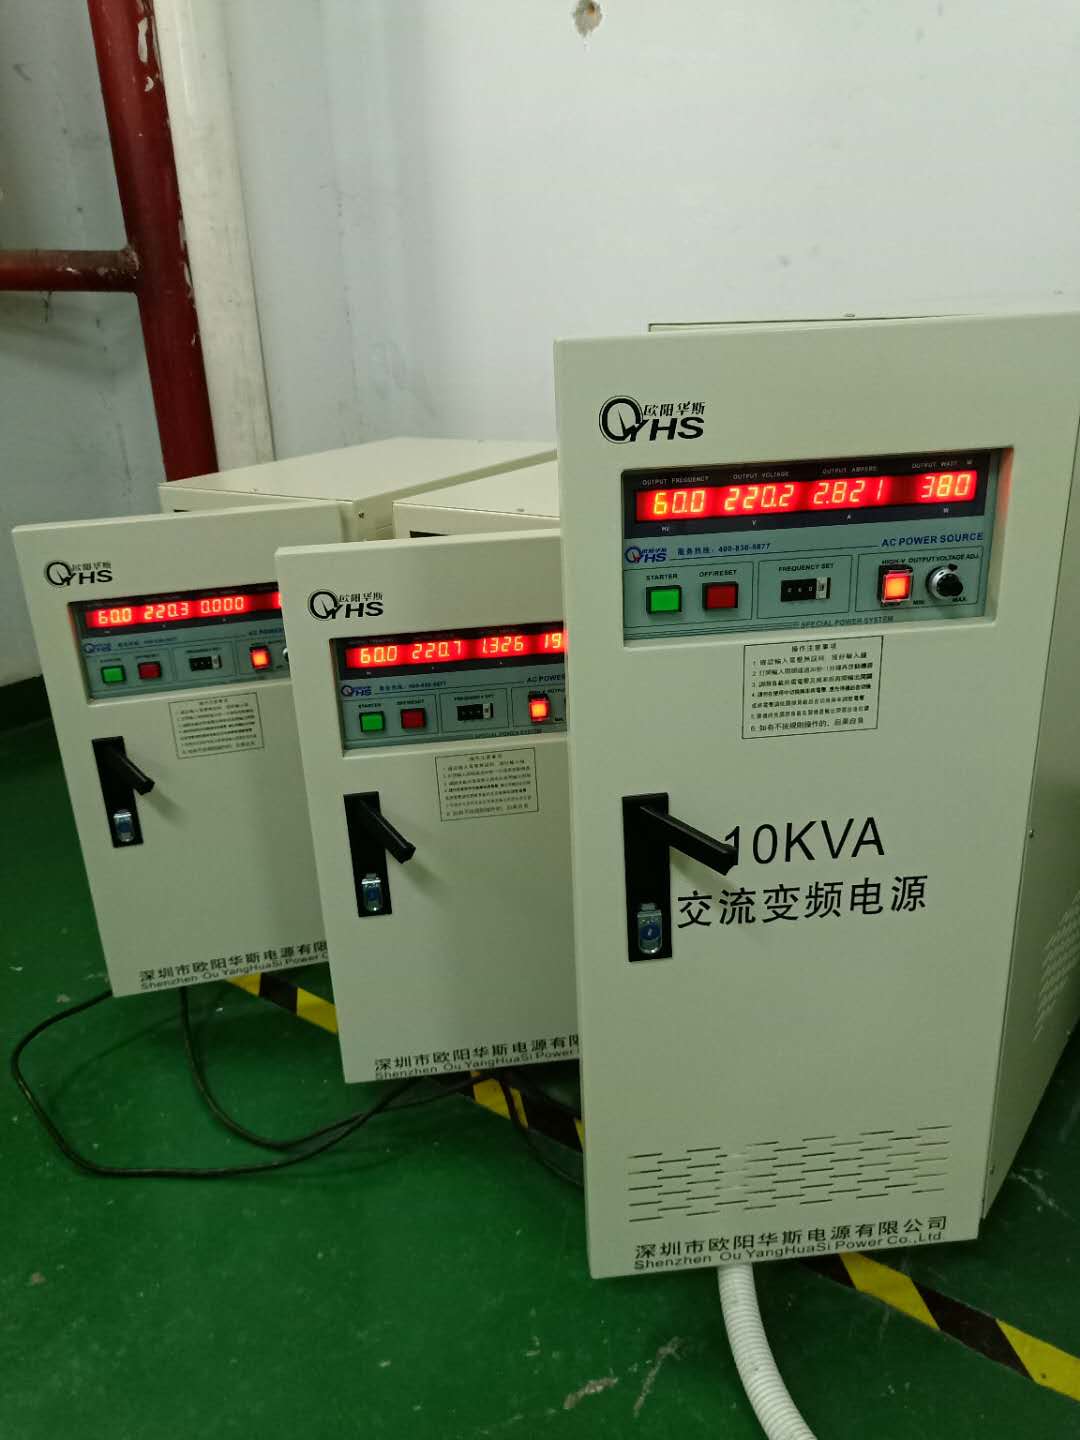 欧阳华斯品牌|10KVA变频电源|10KW变频电源|OYHS-9810|单进单出